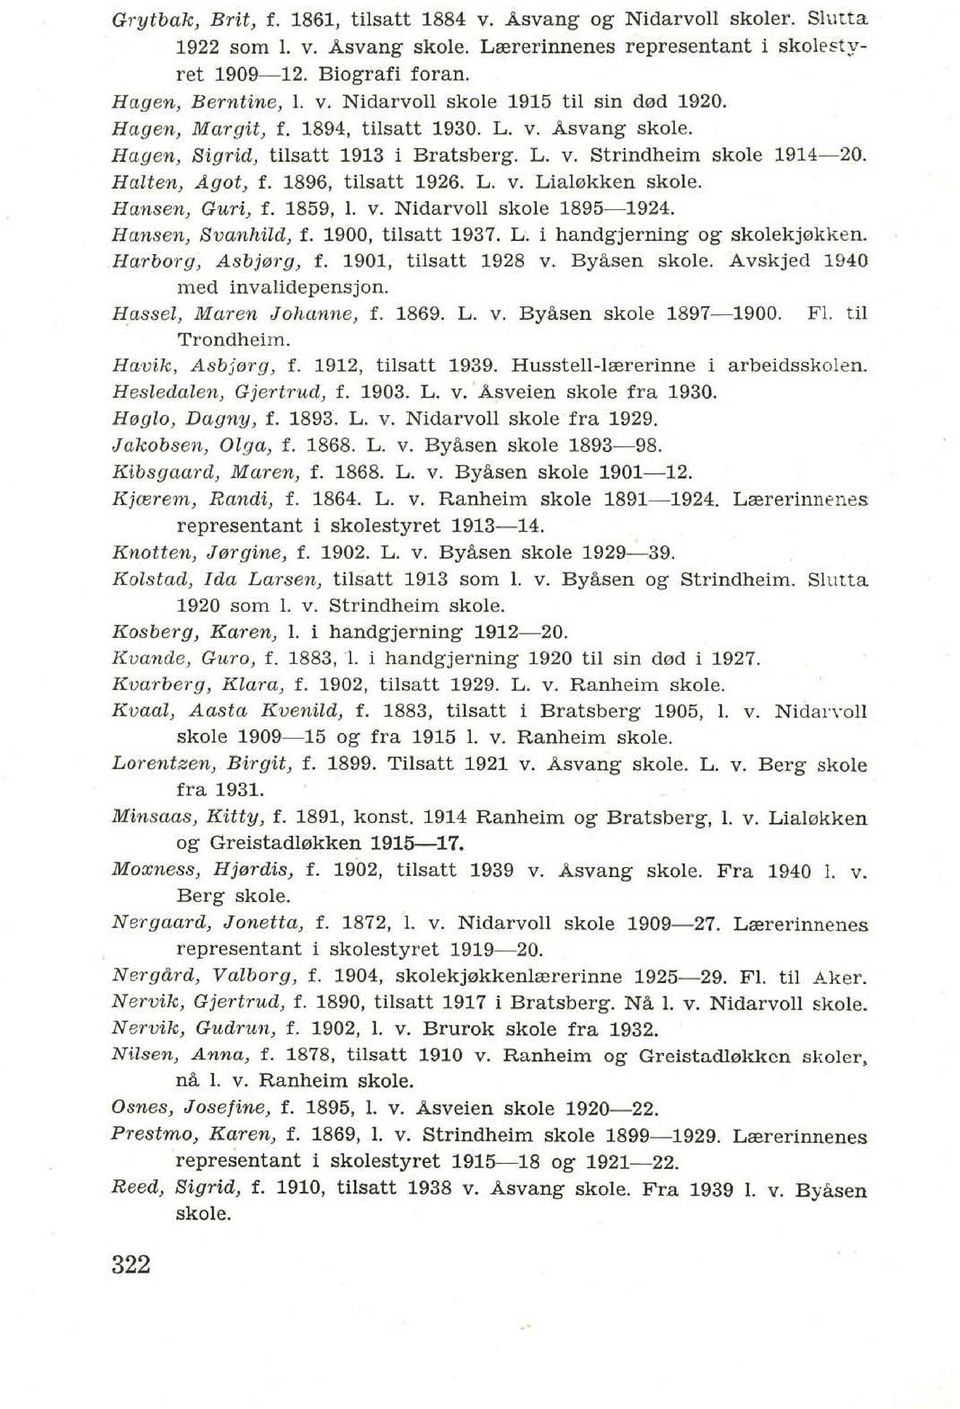 Hansen, Guri, f. 1859, 1. v. Nidarvoll skale 1895-1924. Hansen, Svanhild, f. 1900, tilsatt 1937. L. i handgjerning ag skalekj0kken. Harborg, Asbjerg, f. 1901, tilsatt 1928 v. Byisen skole.